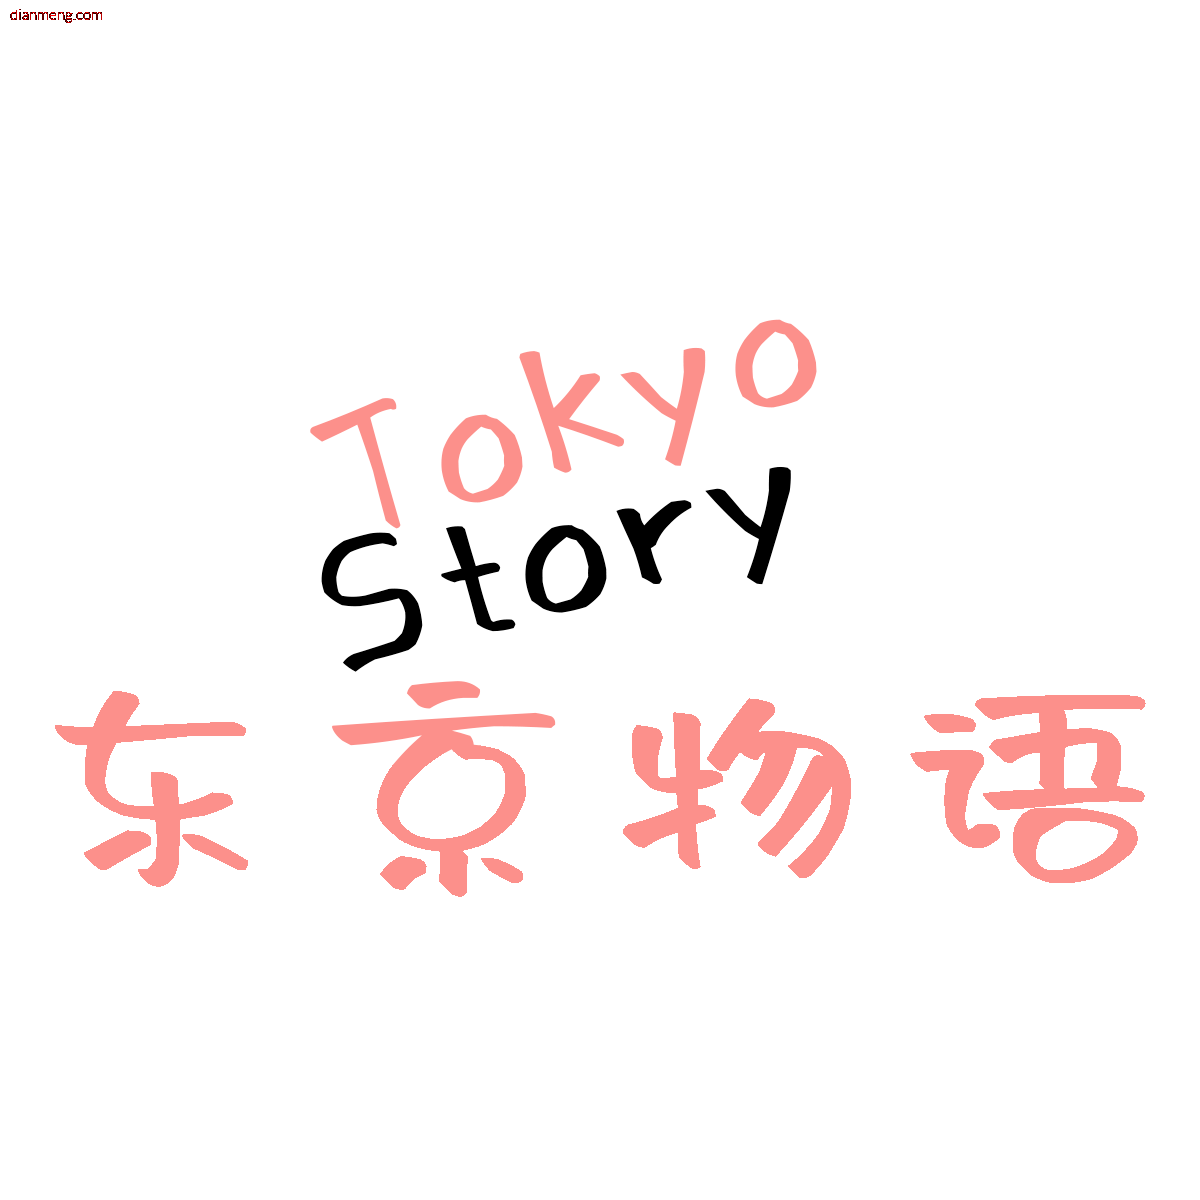 TokyoStory东京物语LOGO